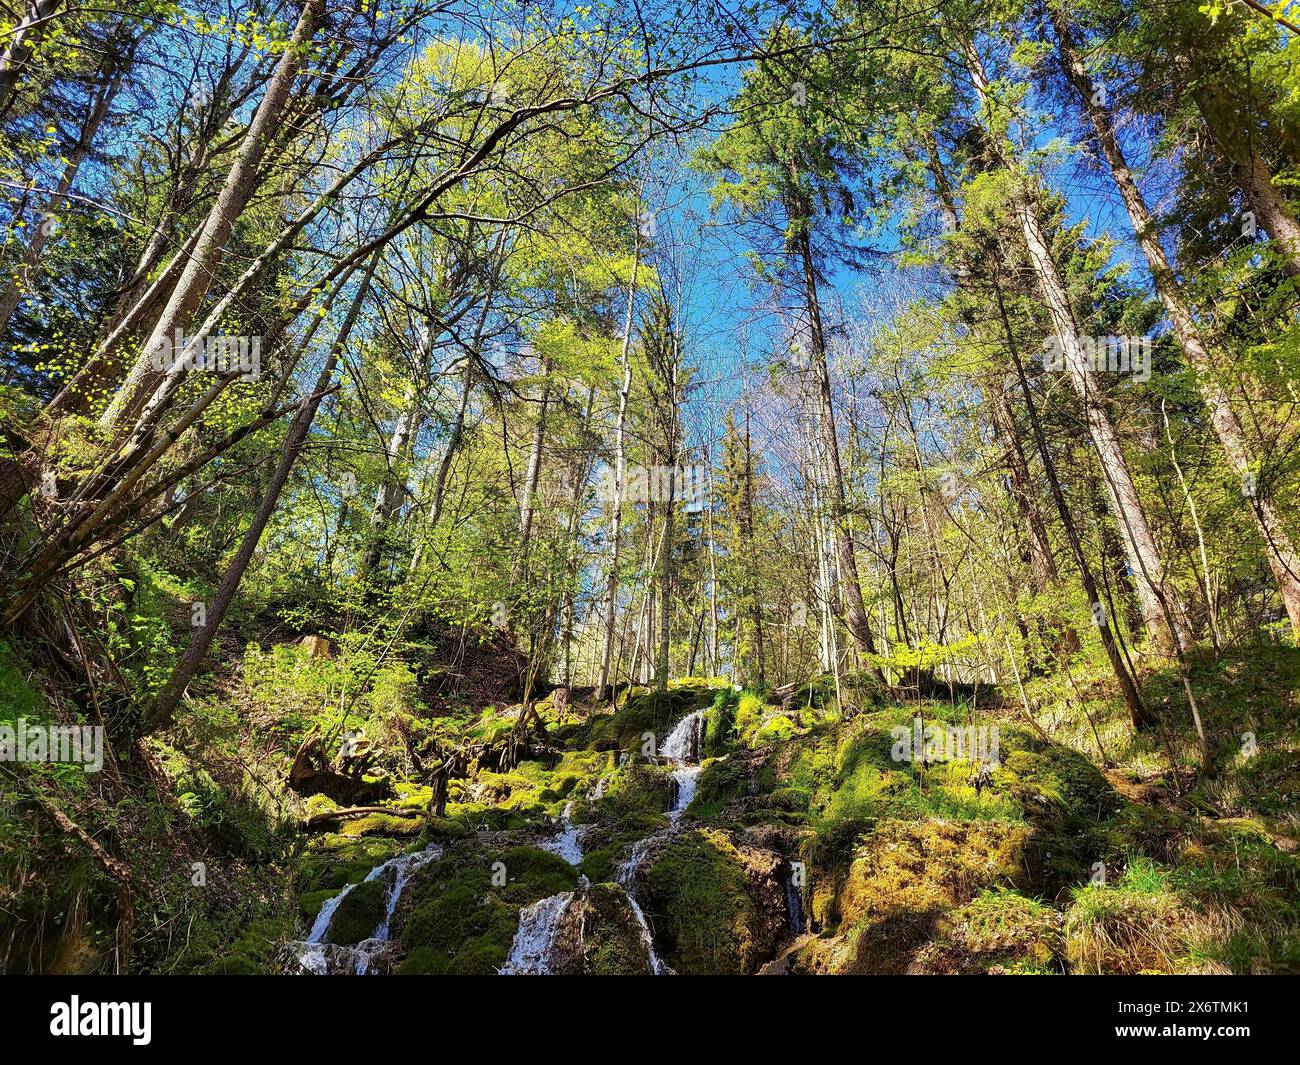 Une scène forestière animée avec une petite cascade coulant sur des rochers couverts de mousse. De grands arbres au feuillage vert atteignent le ciel bleu clair et Banque D'Images